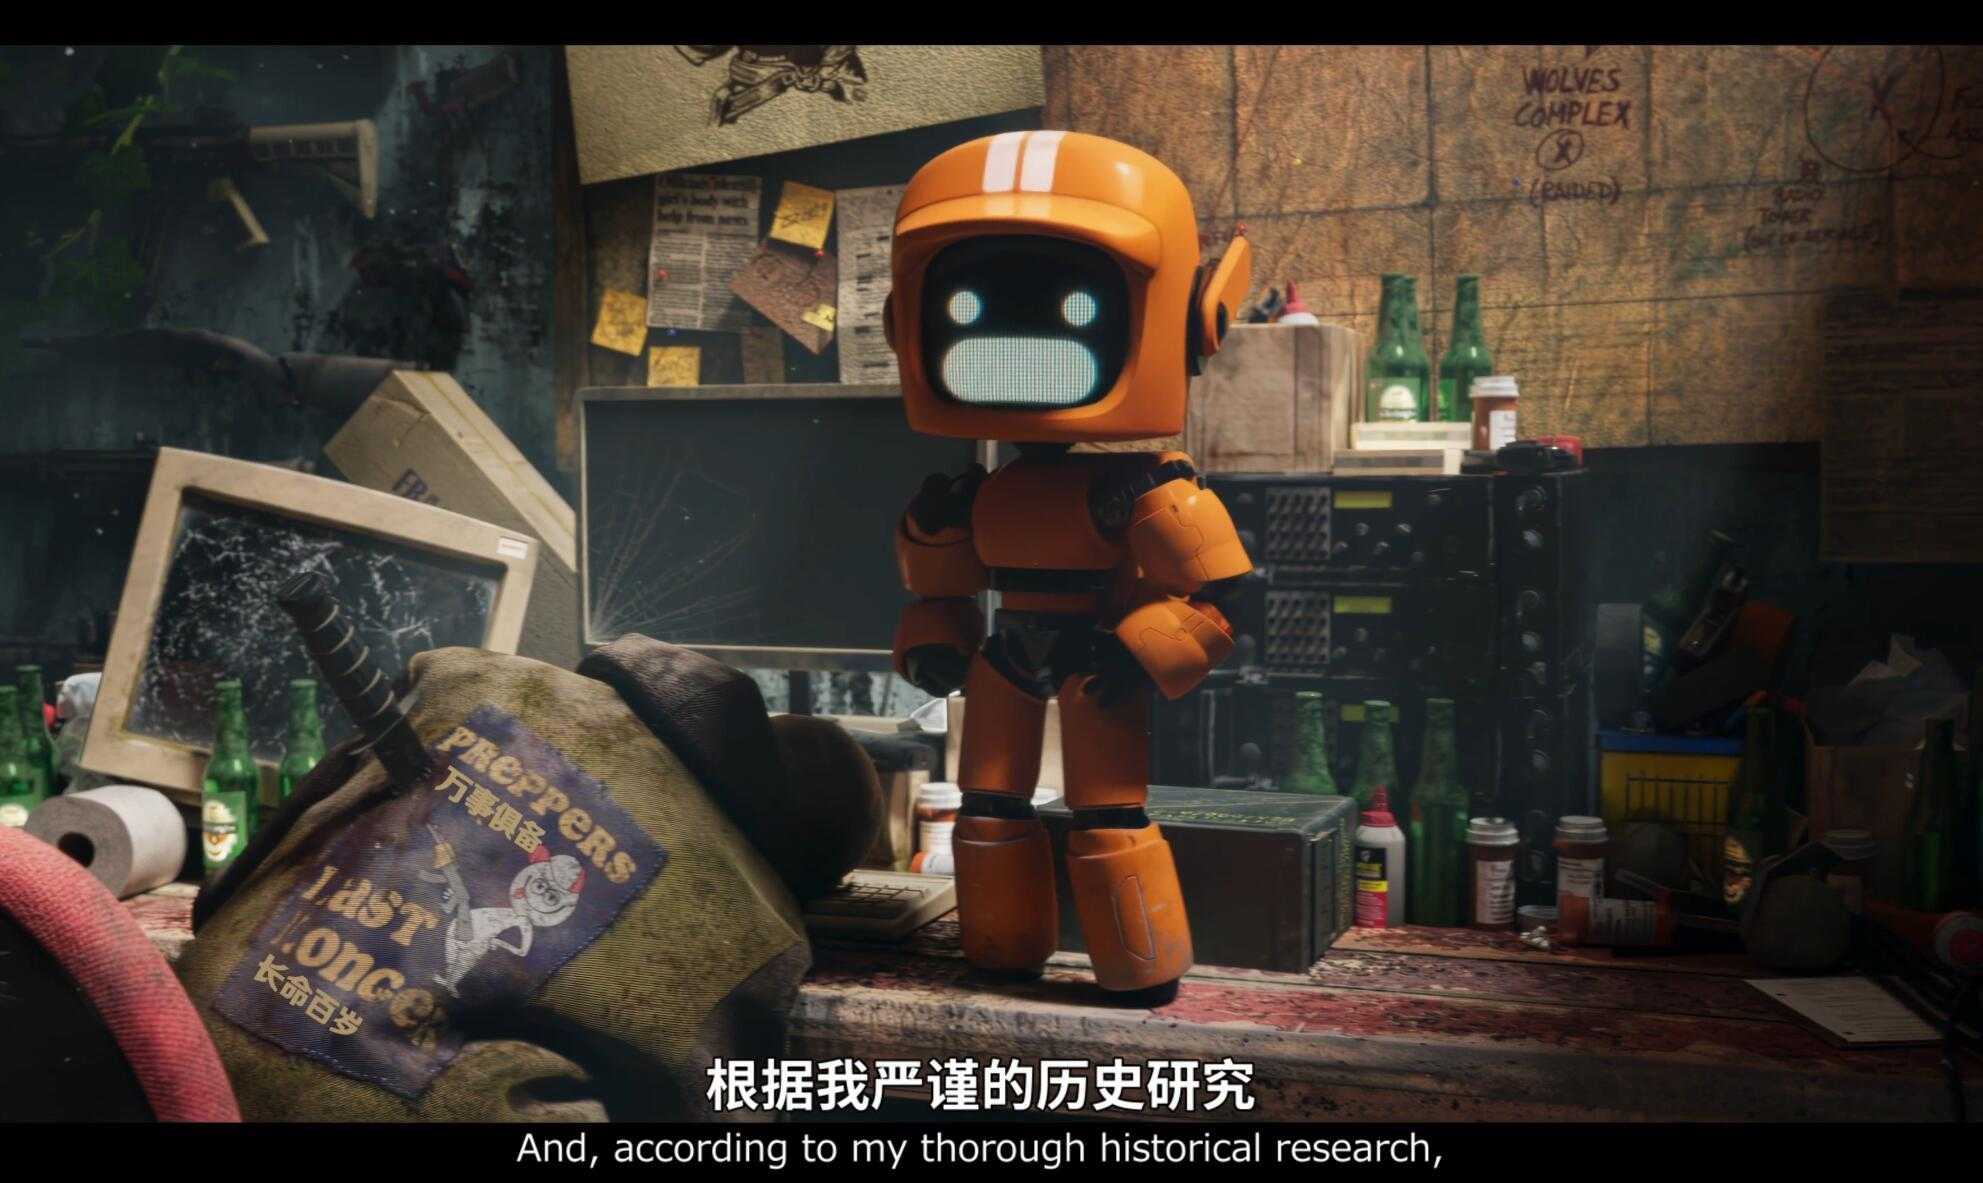 《爱，死亡和机器人》1-3季合集 4K/1080P HDR 简英特效字幕 爱死机豆瓣高分【41.9G】